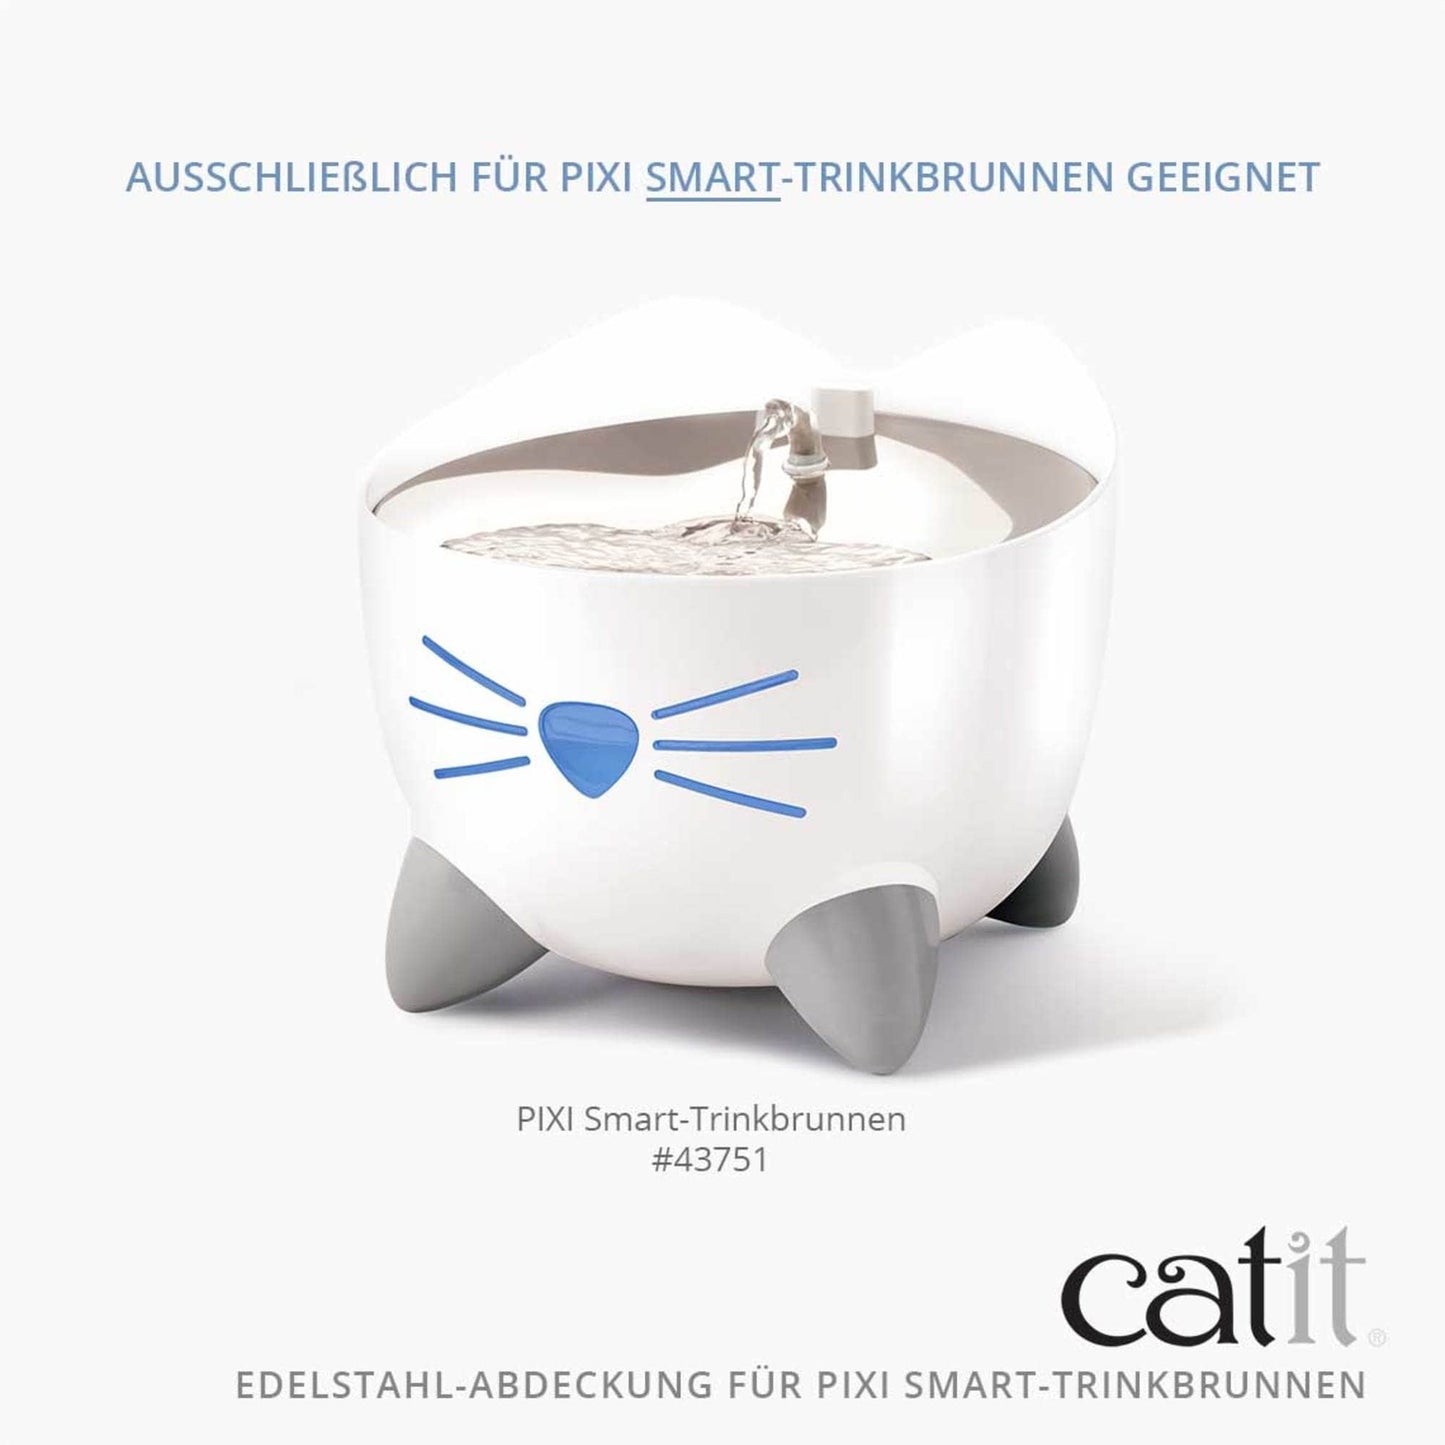 Catit Edelstahl-Abdeckung für PIXI Smart-Trinkbrunnen